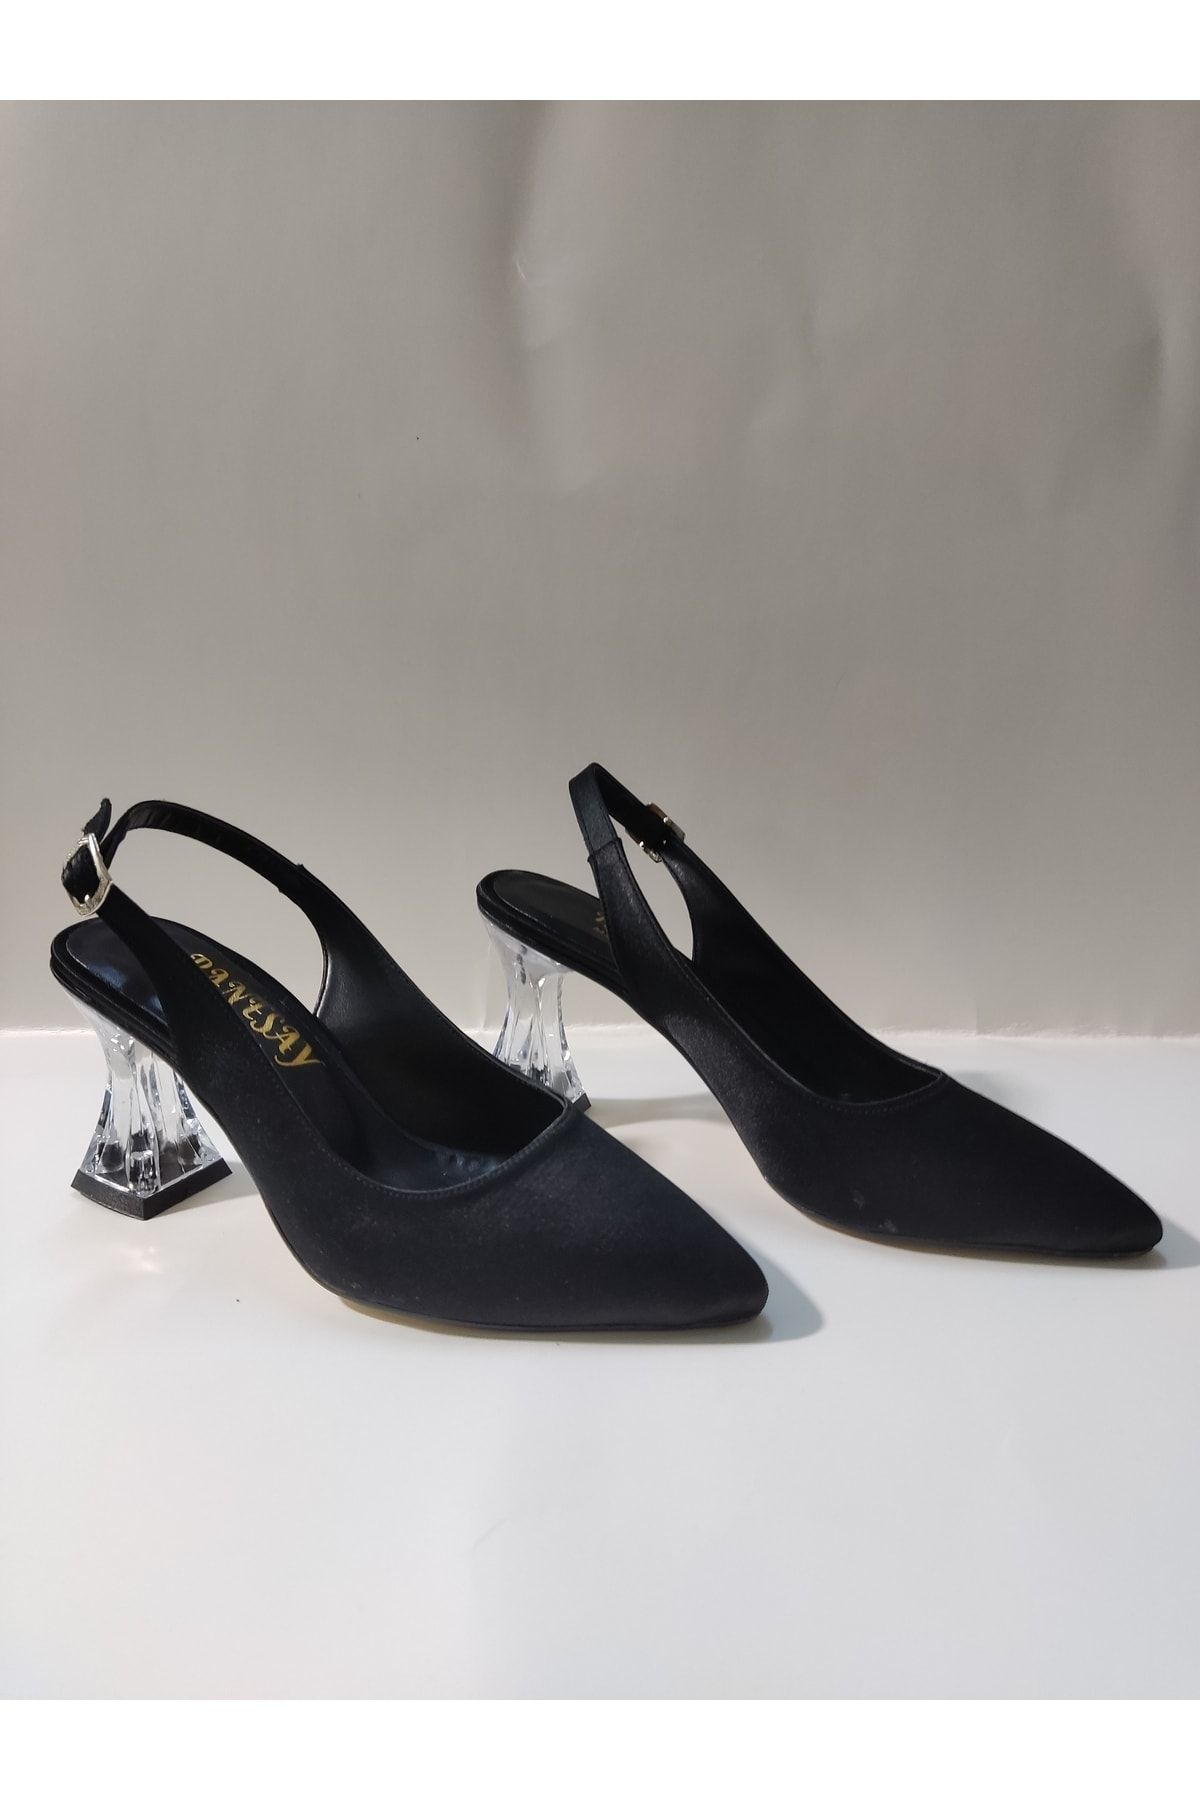 Renasay shose Kadın siyah saten kılasik topuklu ayakkabı